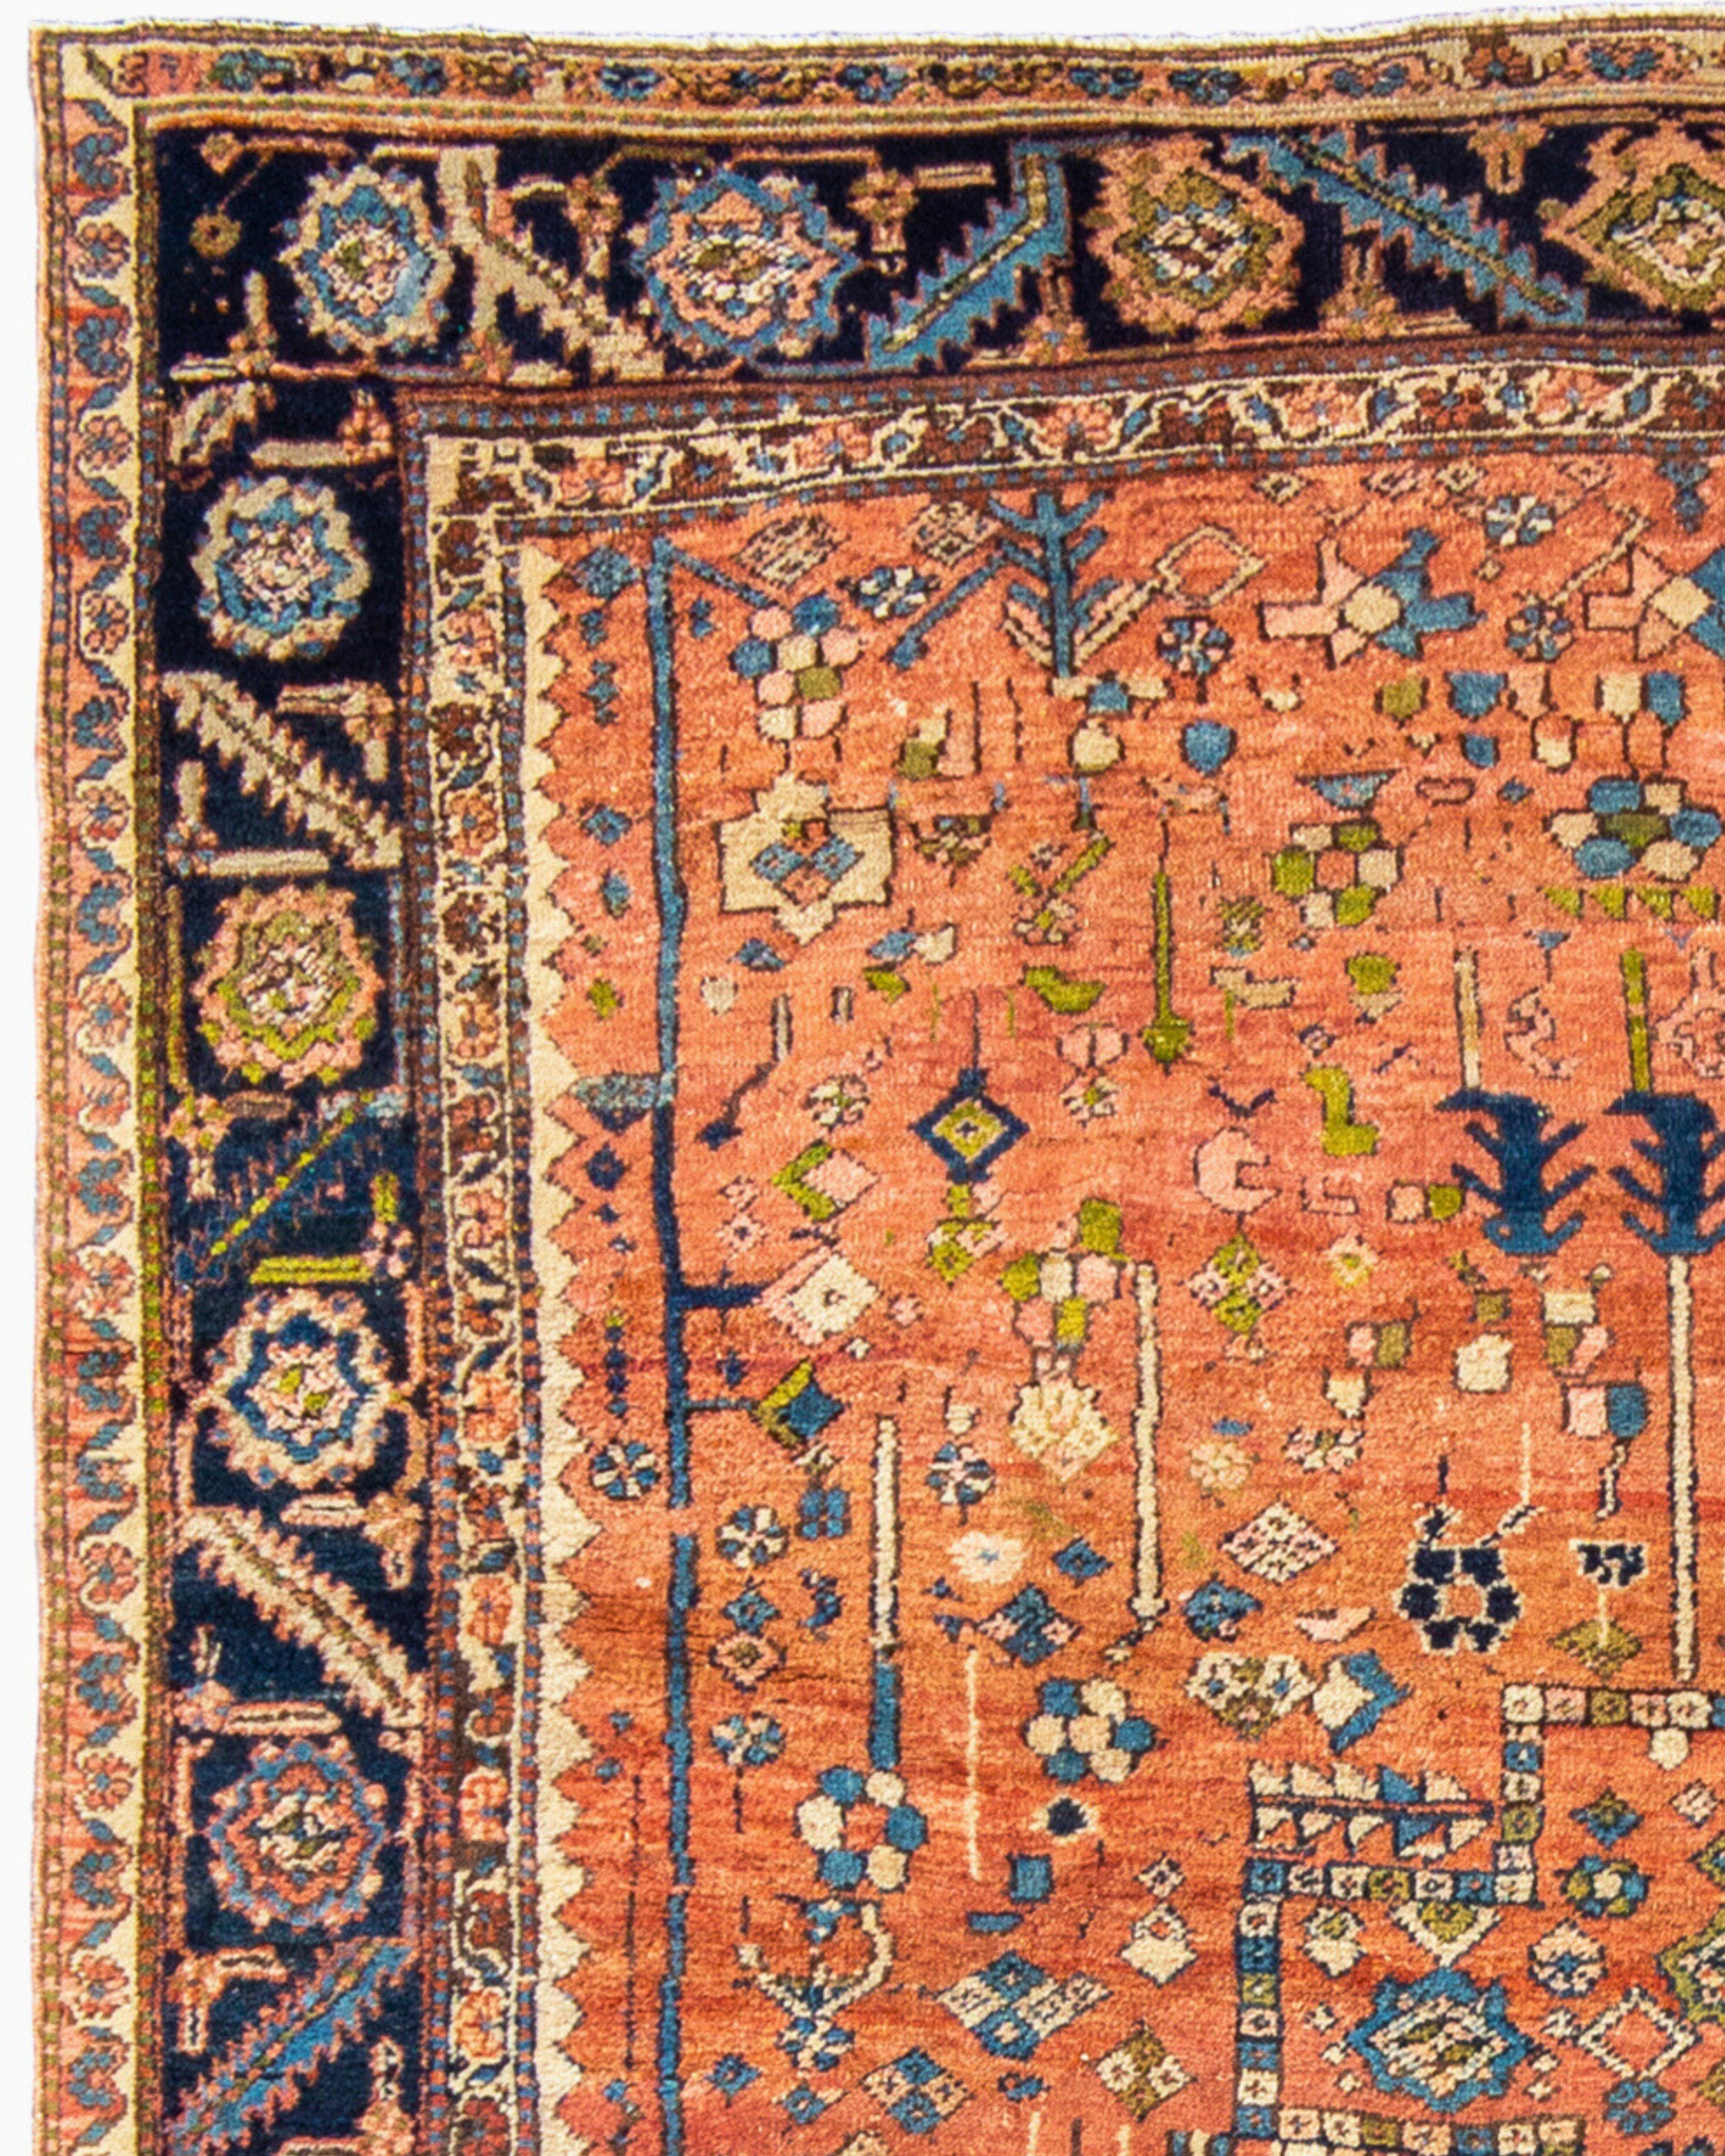 Hand-Woven Antique Persian Bakhshaish Carpet, c. 1900 For Sale